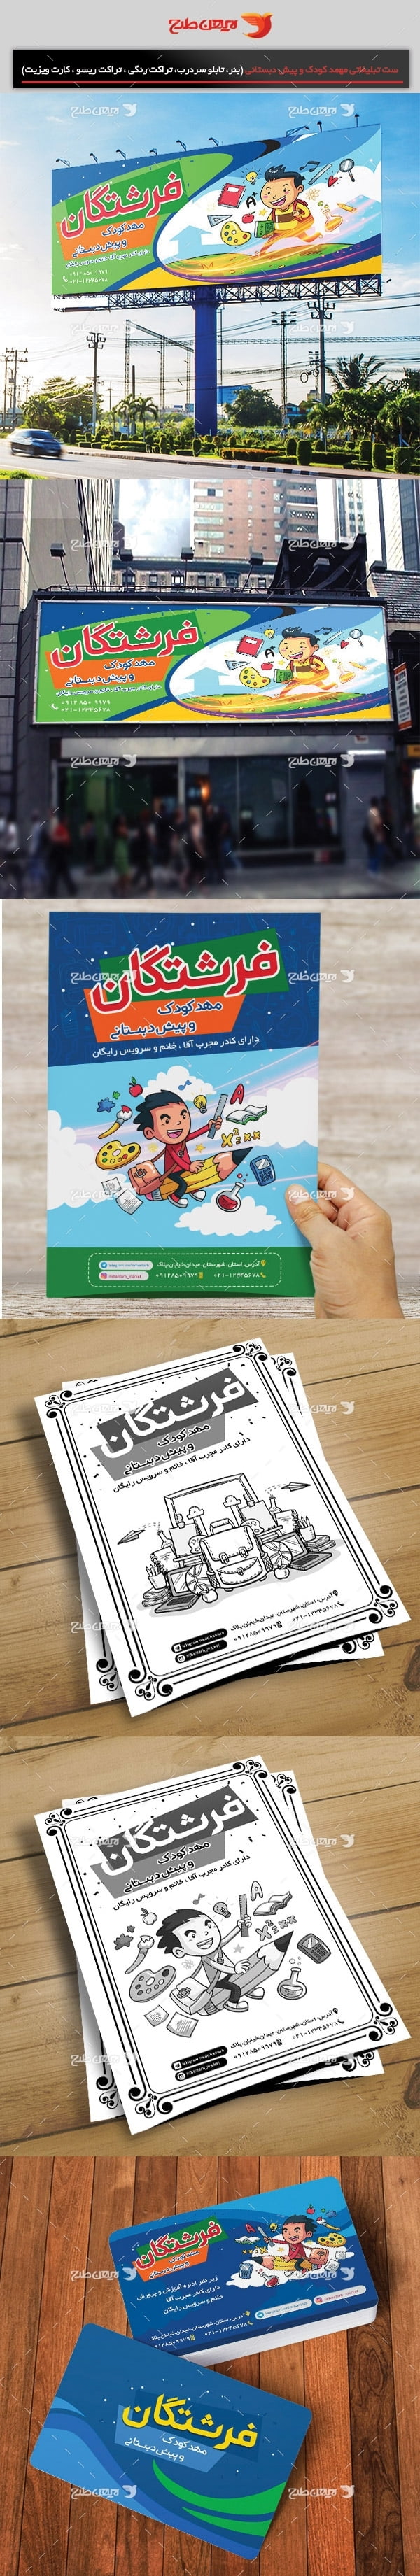 طرح ست تبلیغاتی آموزشگاه مهد کودک و پیش دبستانی (تراکت رنگی، کارت ویزیت، تابلو سردرب ، تراکت ریسو)